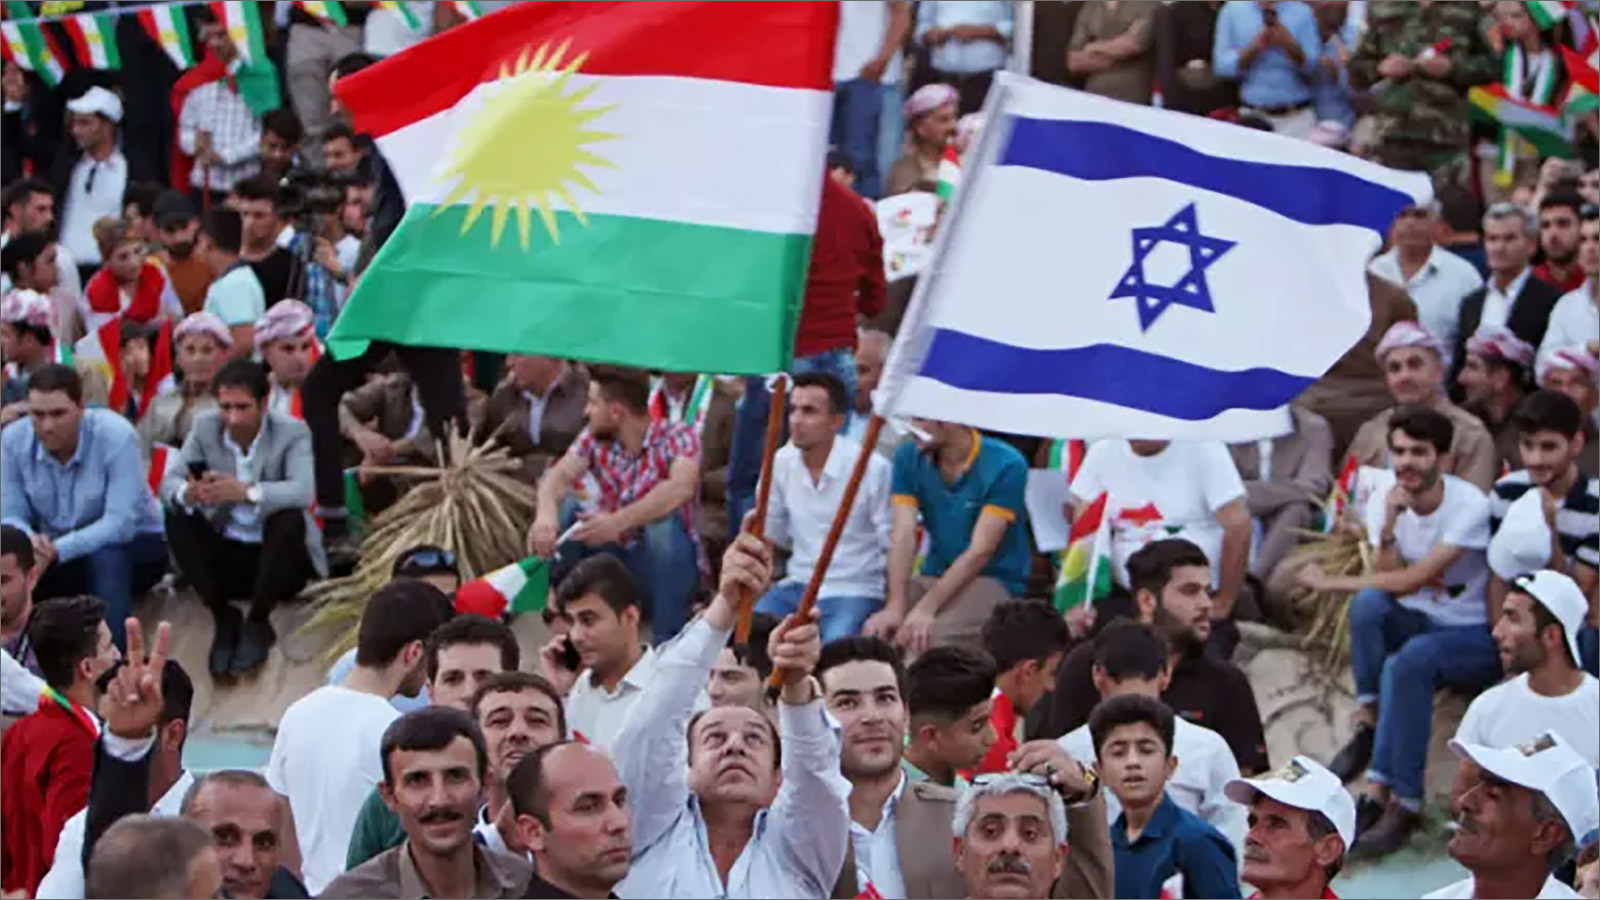 إسرائيل كانت الوحيدة في العالم الداعمة لانفصال كردستان وقابلها بعض الأكراد برفع علمها عام 2017 (الصحافة الإسرائيلية)